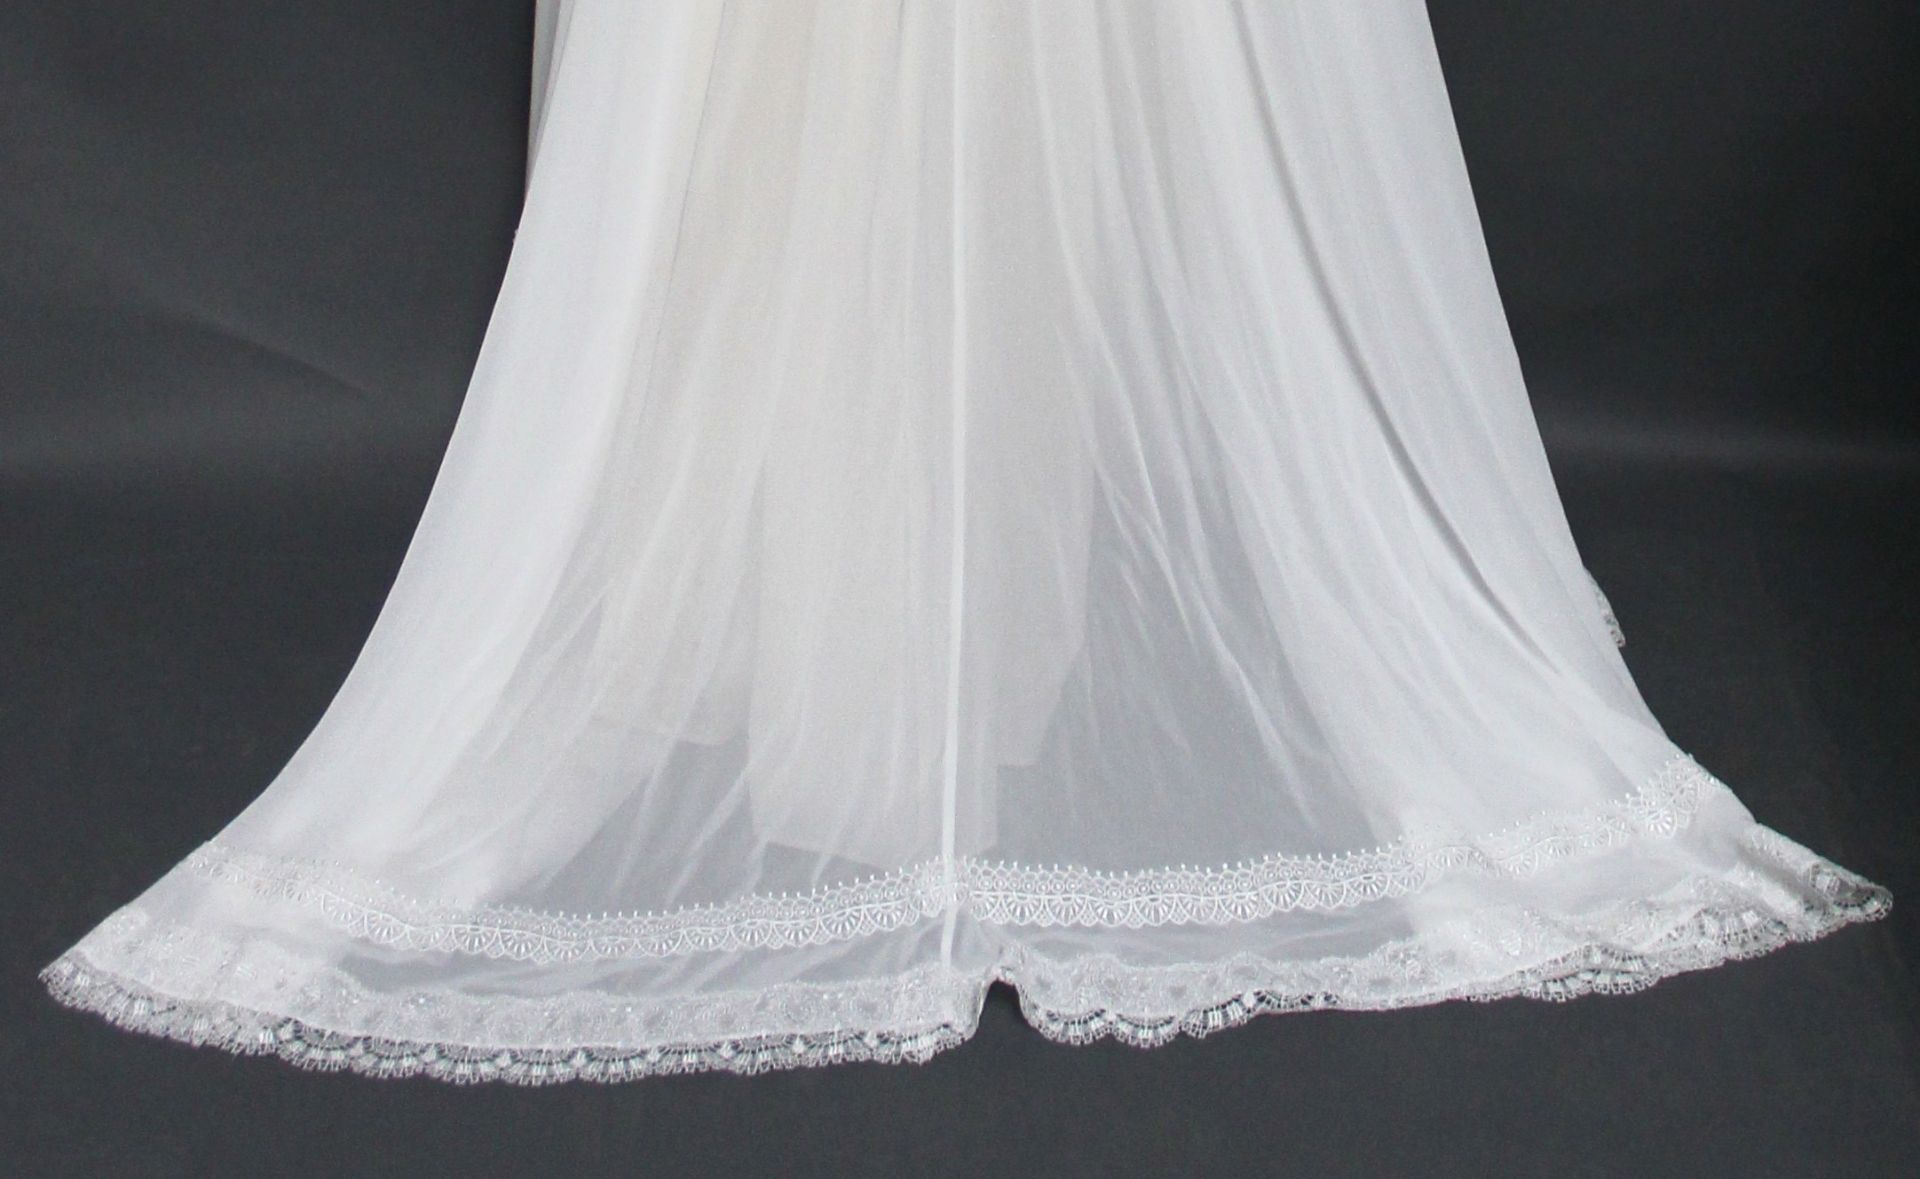 1 x DIANE LE GRAND Lace Off The Shoulder Designer Wedding Dress RRP £1,400 UK10 - Image 6 of 6